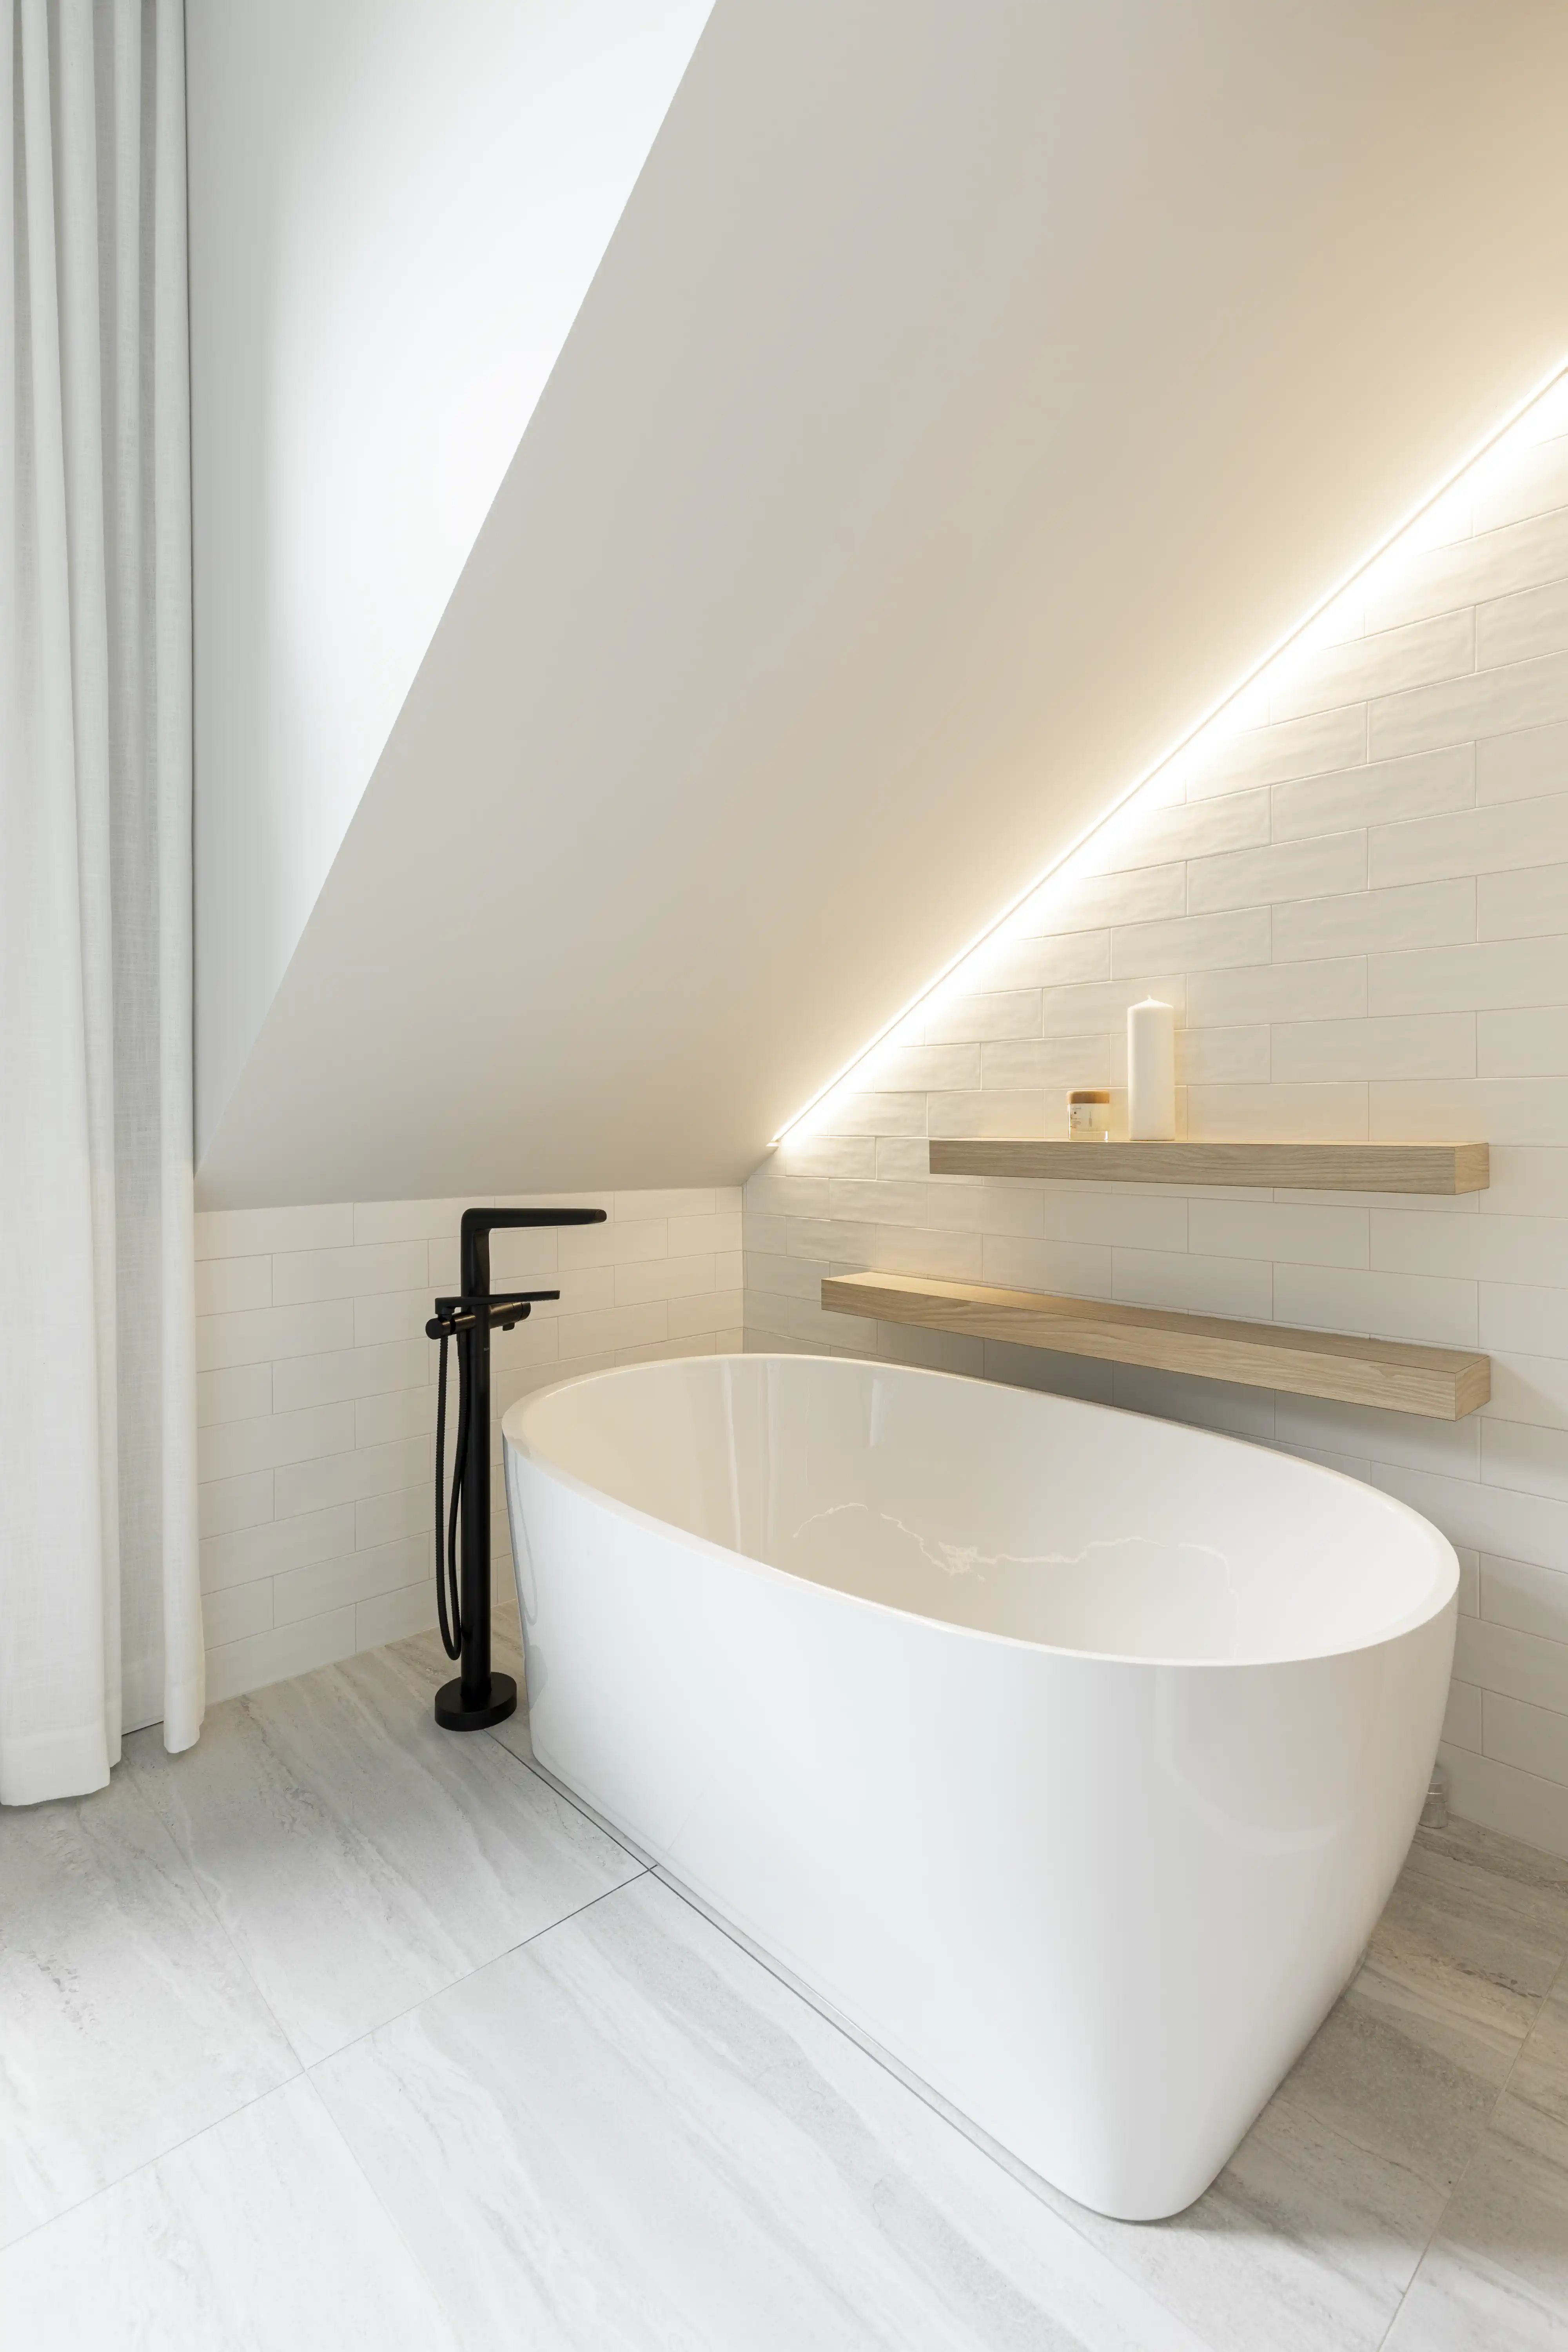 Une salle de bain en marbre blanc avec une baignoire autoportante et une fenêtre, intérieur signé Sarah Brown Design